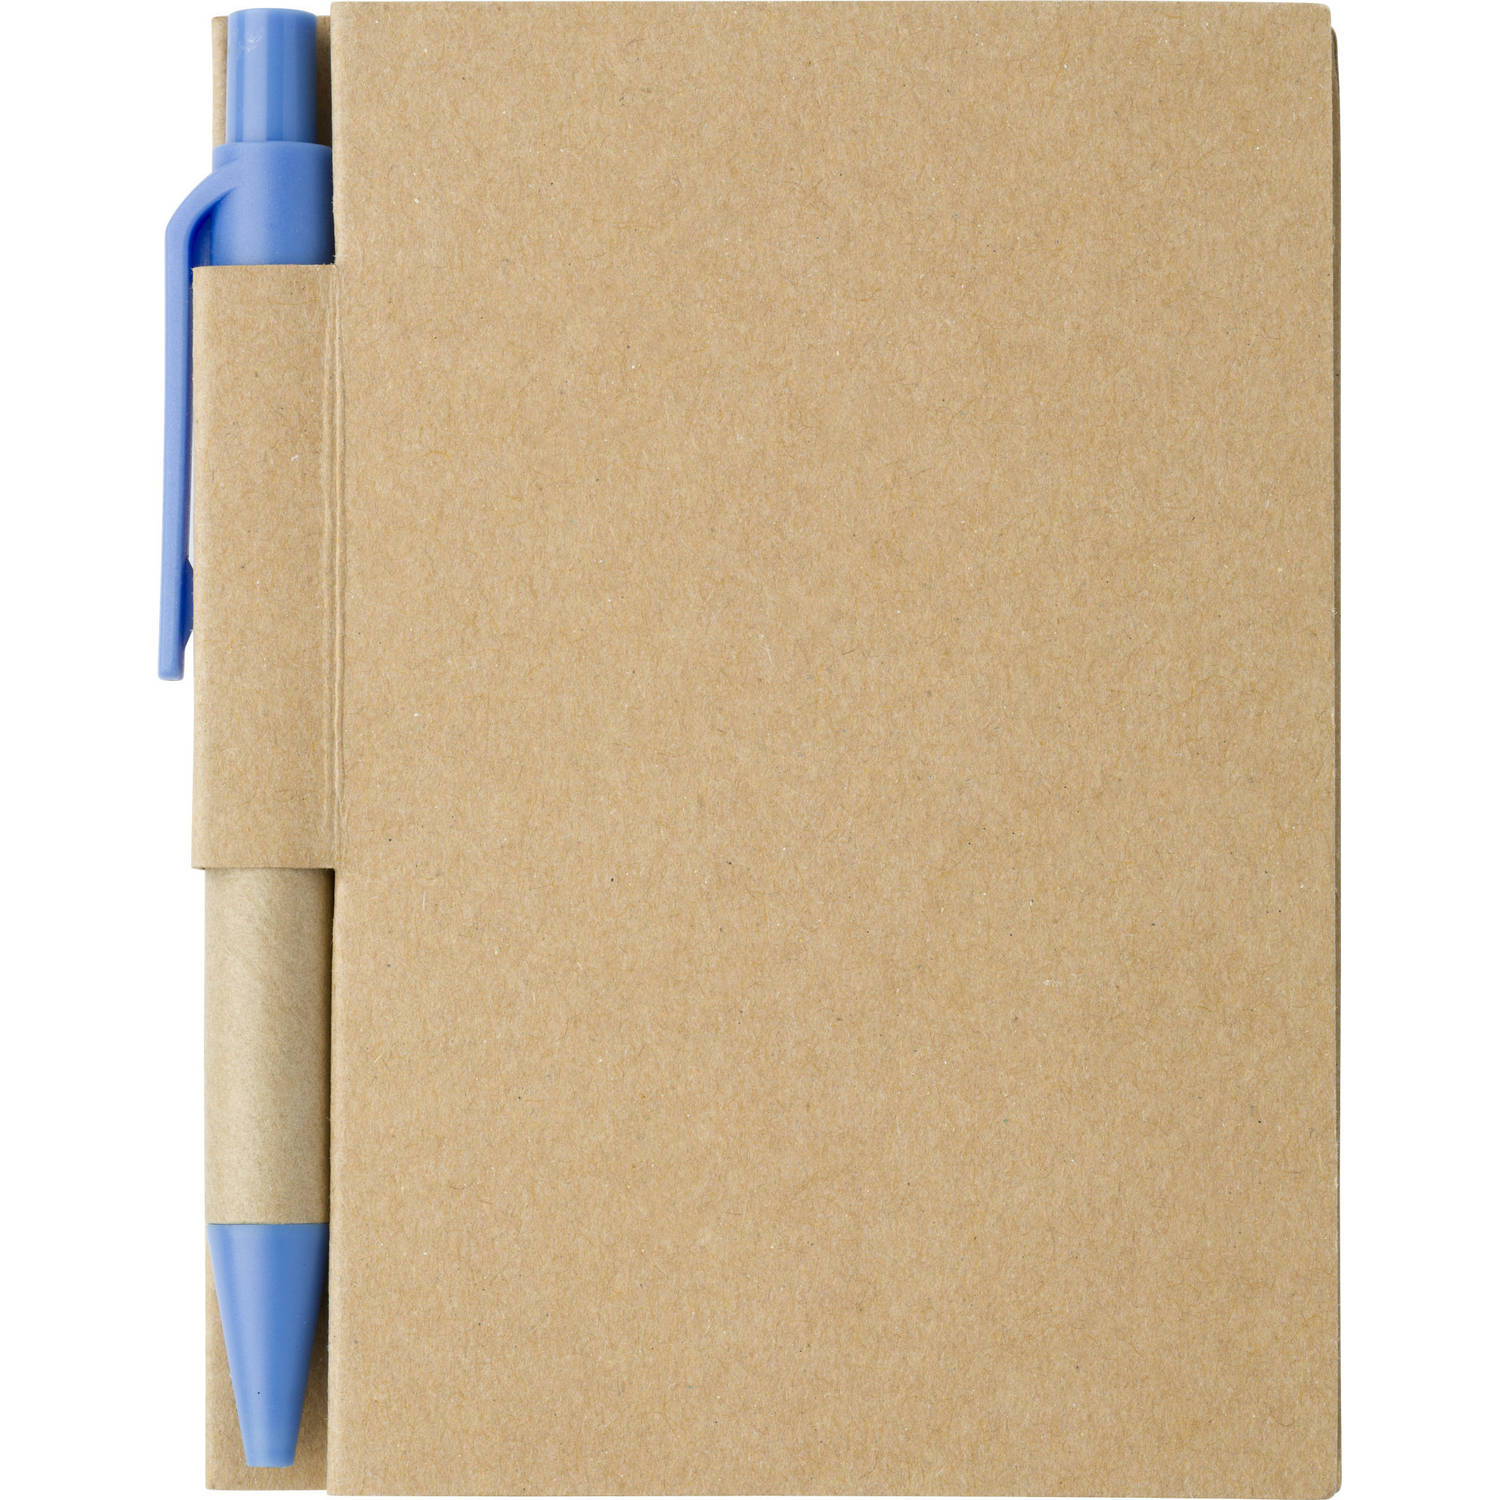 Notitie-opschrijf boekje met balpen harde kaft beige-blauw 11x8cm 80blz gelinieerd Notitieboek